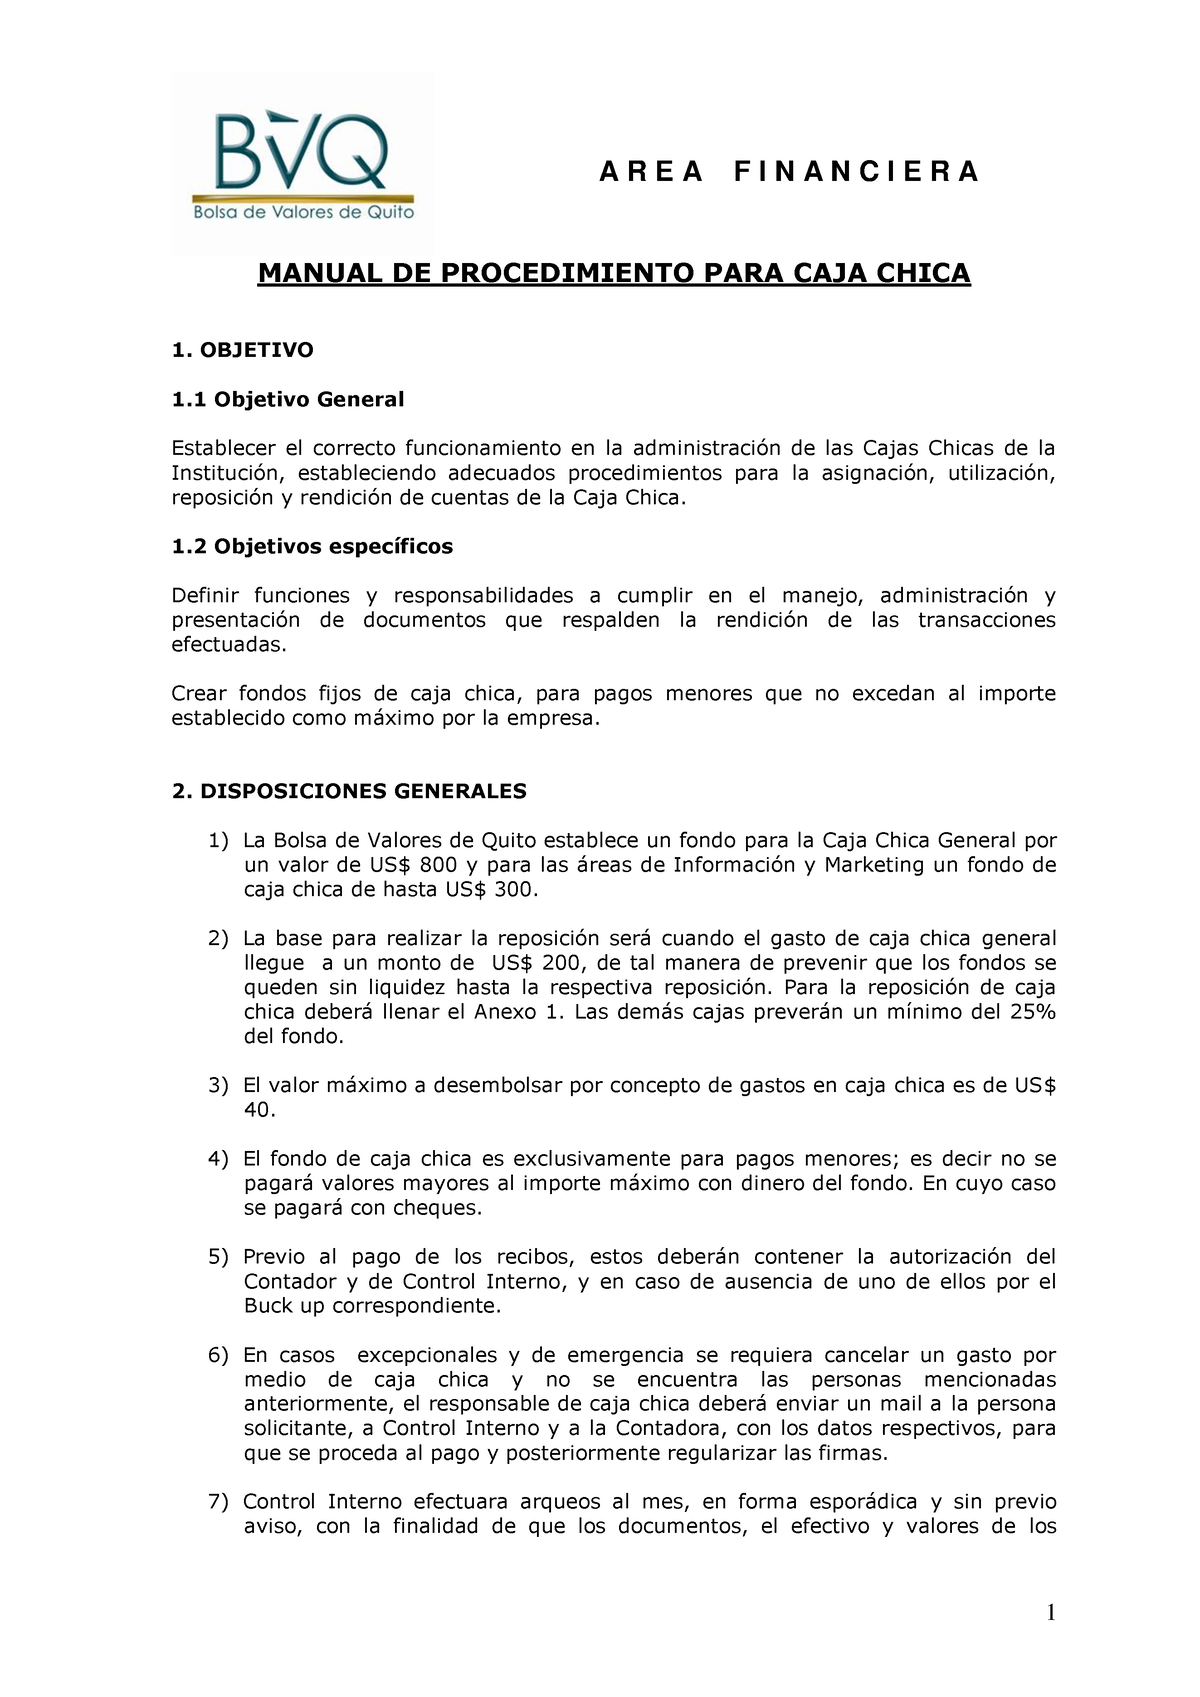 Manual De Procedimiento Para Caja Chica Manual De Procedimiento Para Caja Chica 1 Objetivo 1 1147